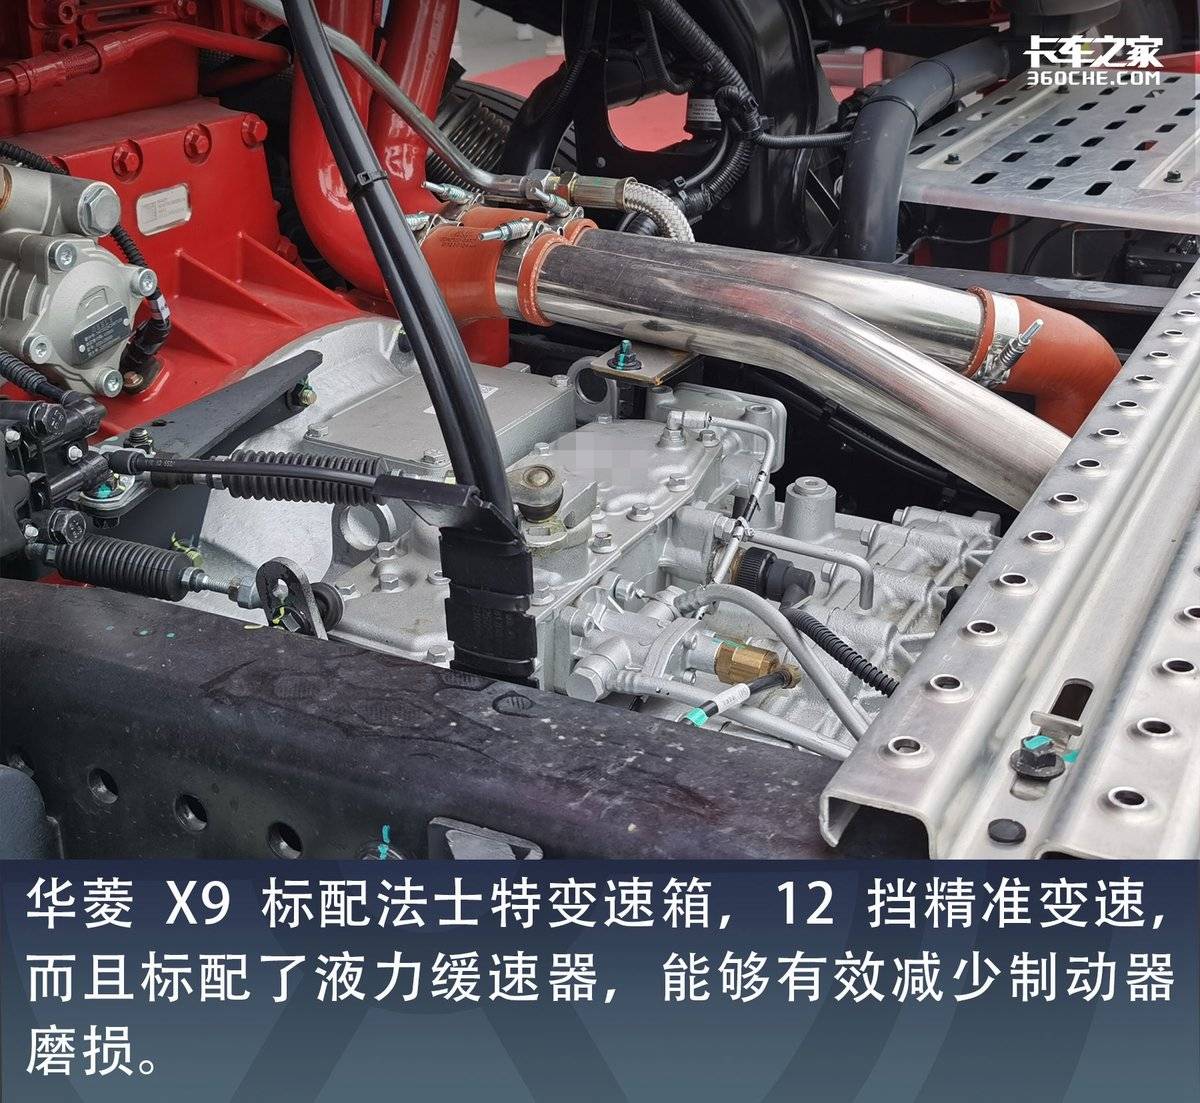 开启中国重卡乘用化时代 华菱X9给你带来全新的驾乘体验